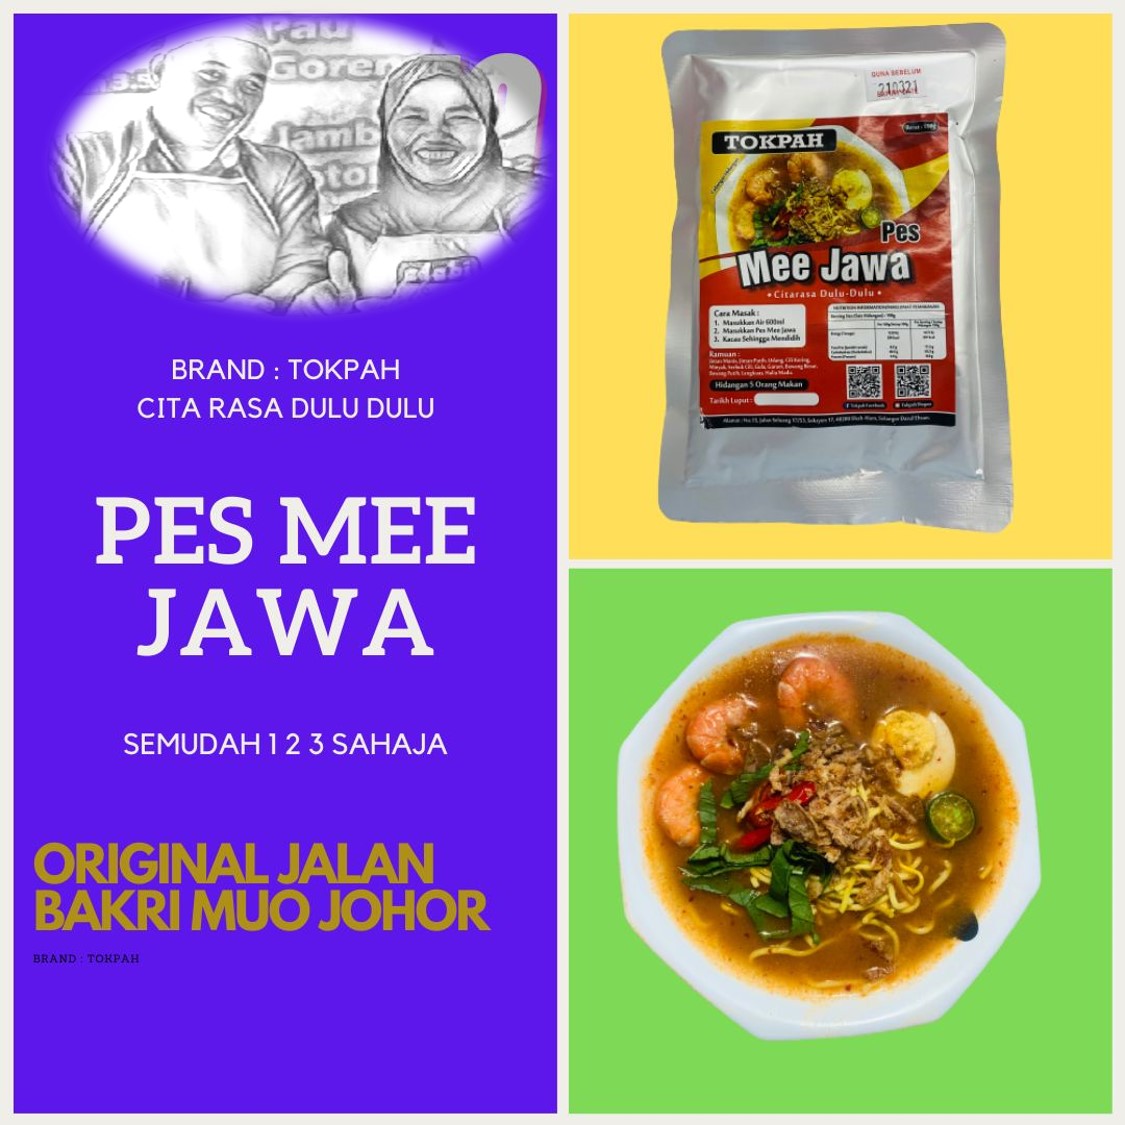 TokPah Pes Mee Jawa Original Muo Johor! 👍🔥